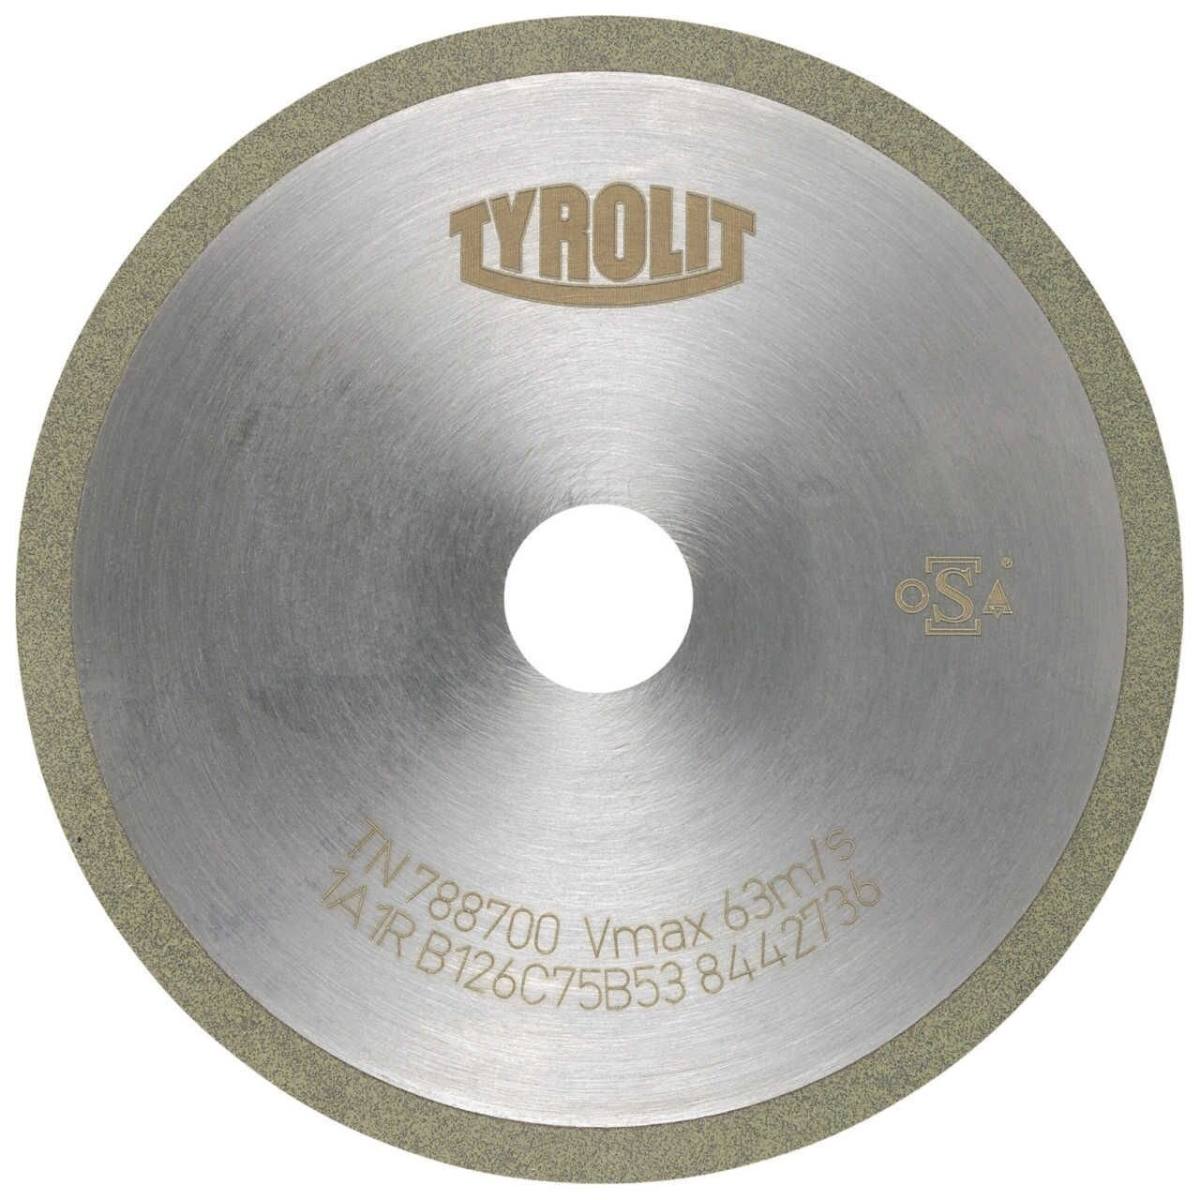 TYROLIT Herramientas rotativas de corte DxDxH 75x1x20 Para metal duro, forma: 1A1R (disco de corte con disco de corte continuo), Art. 299109